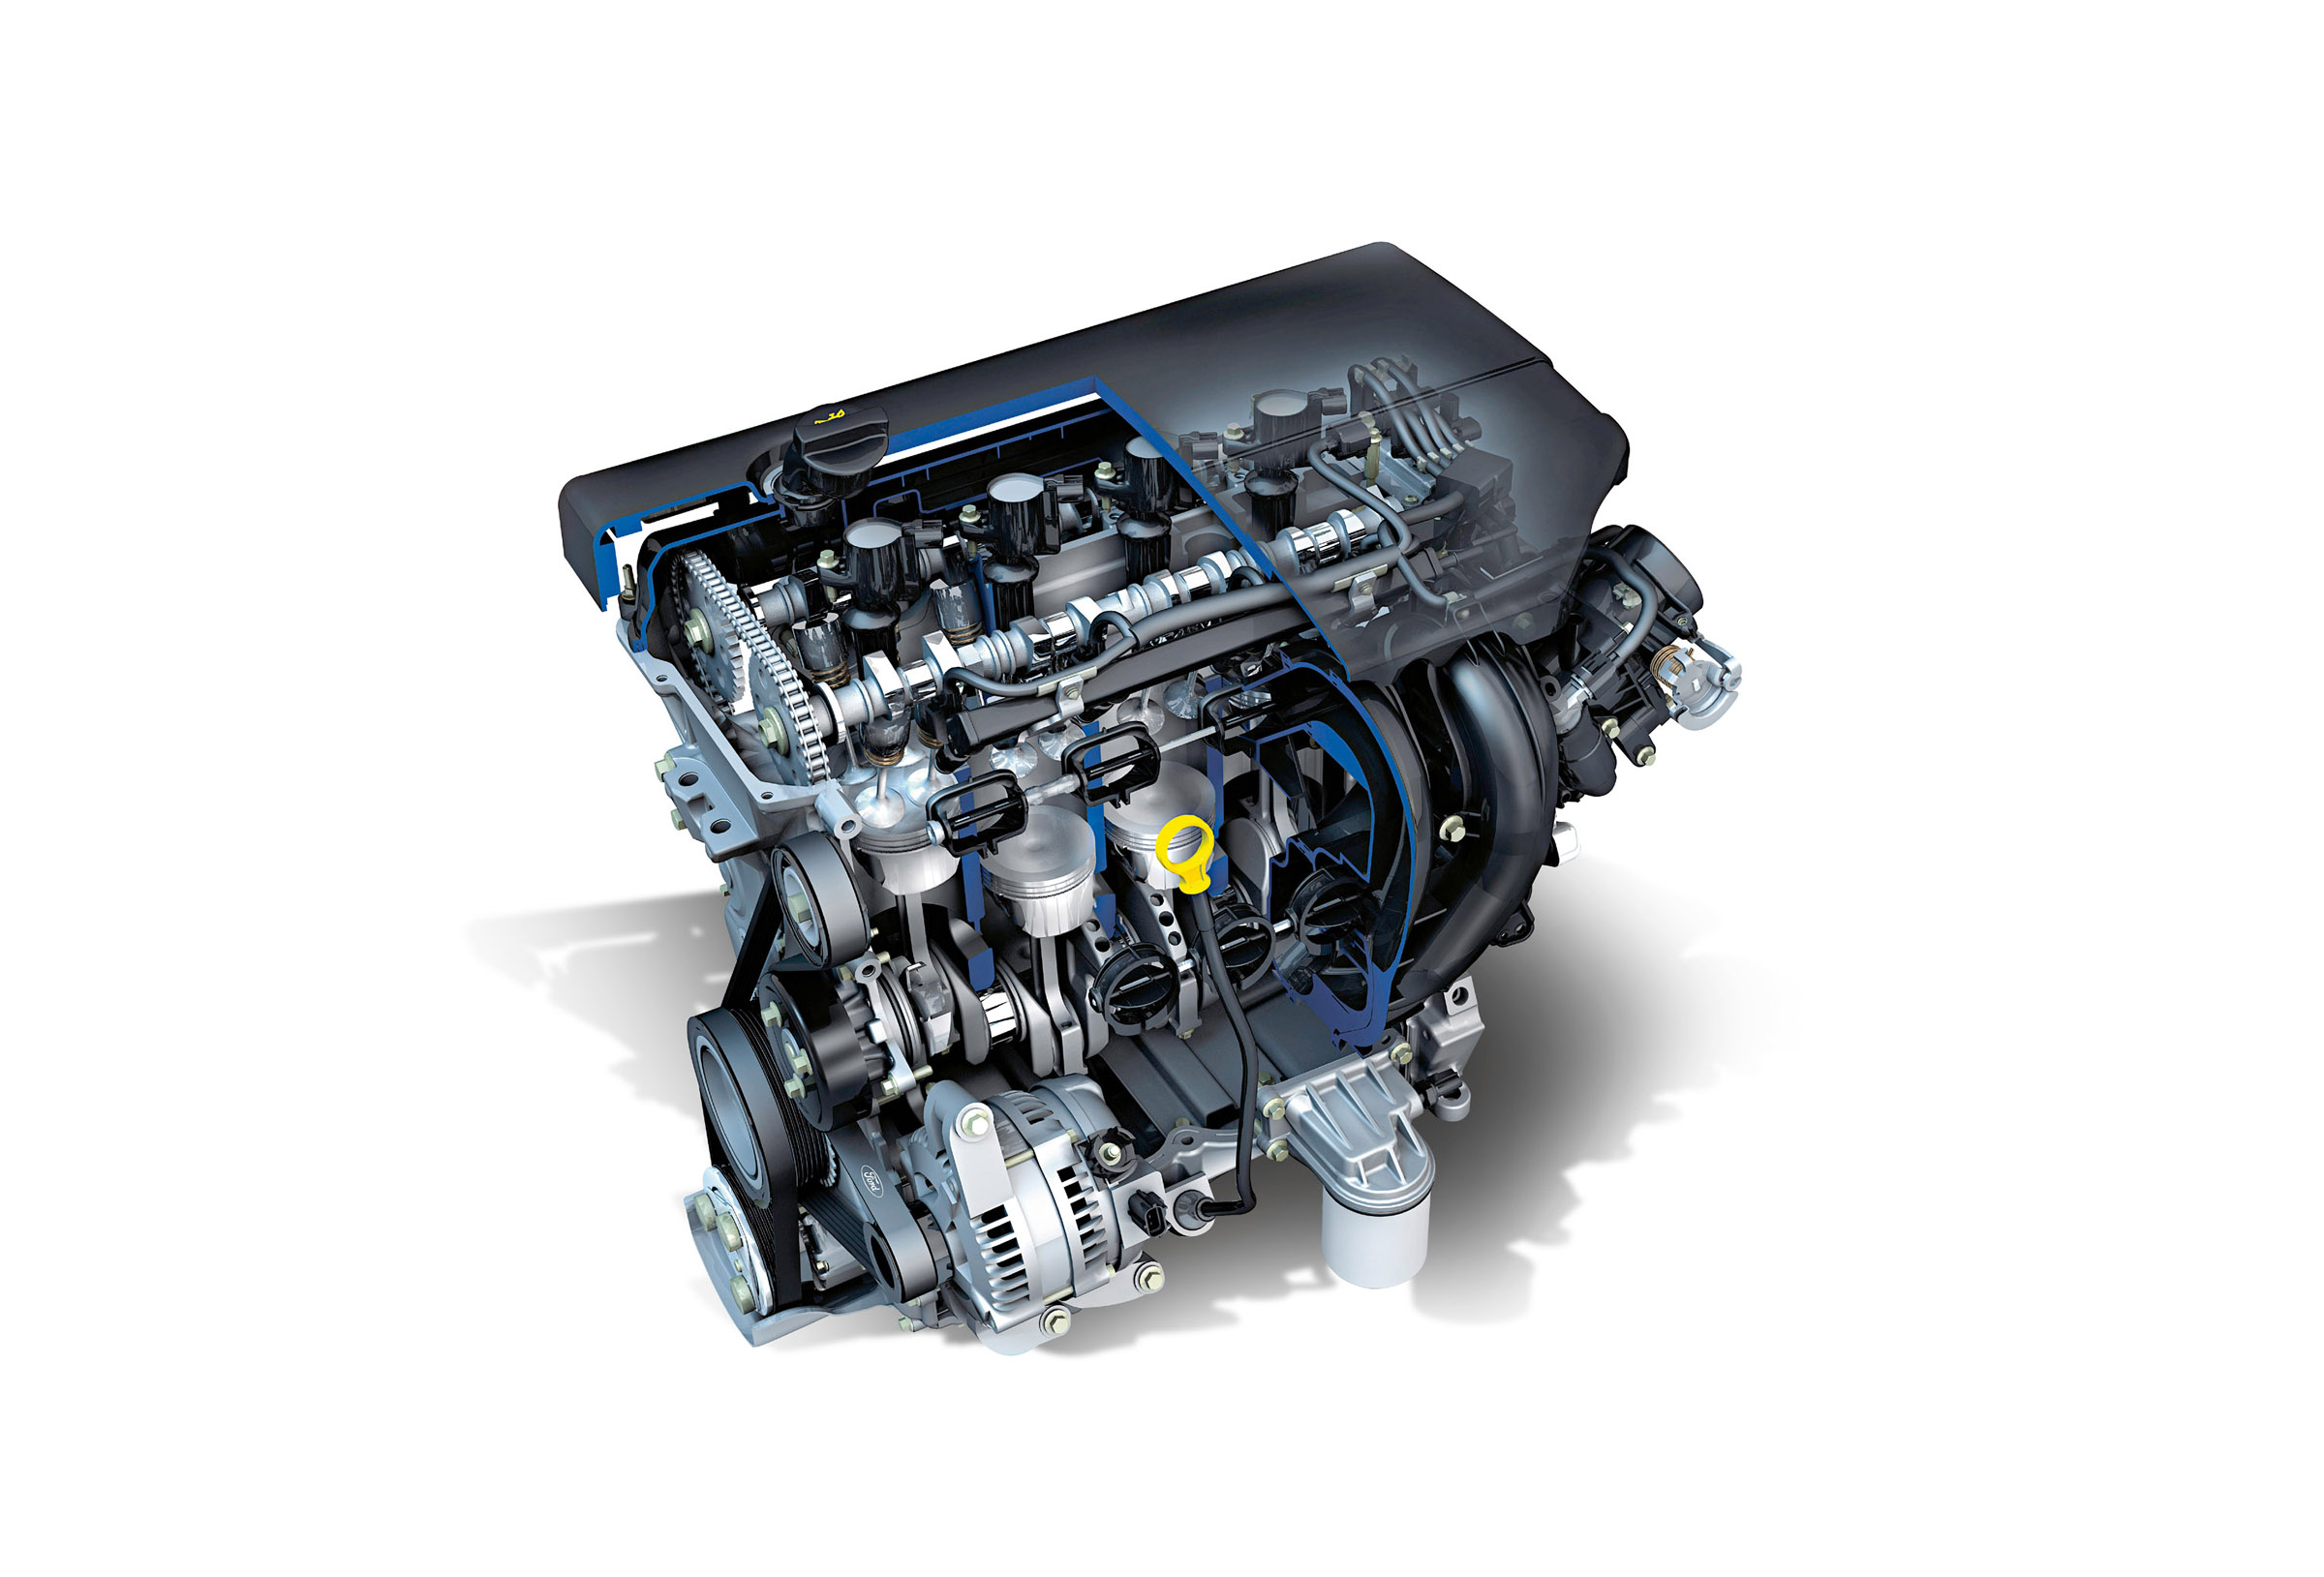 Ремонт двигателя форд 1.6. Duratorq TDCI 2.0. Двигатель Duratec 2.0. Мотор Форд фокус 2 2.0. 2.0L Duratorq-TDCI (143ps) мотор.